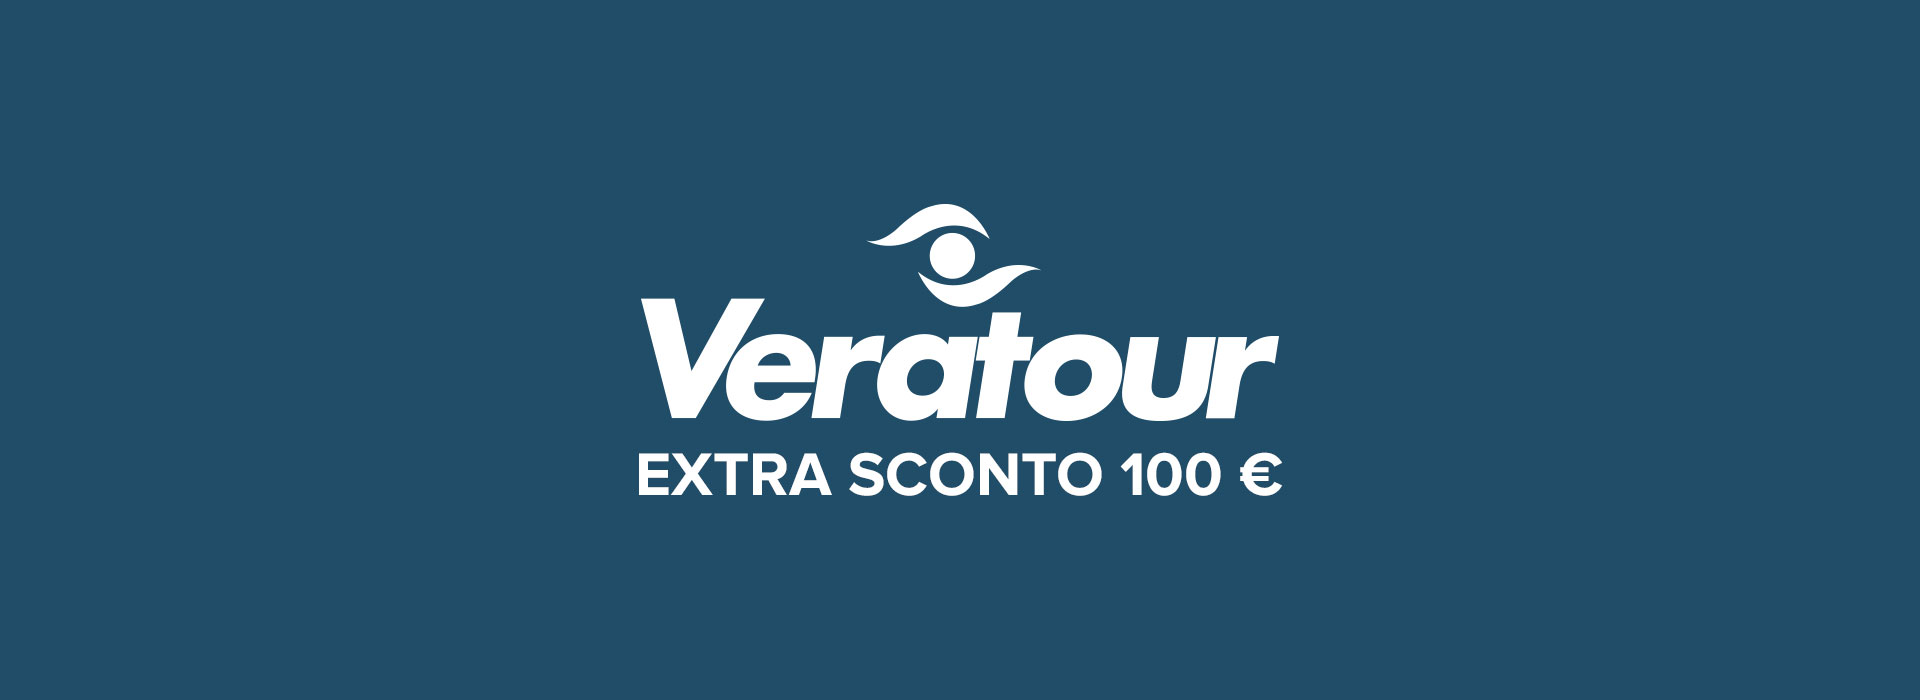 Promozione Verastore Veratour: Extra sconto 100 €